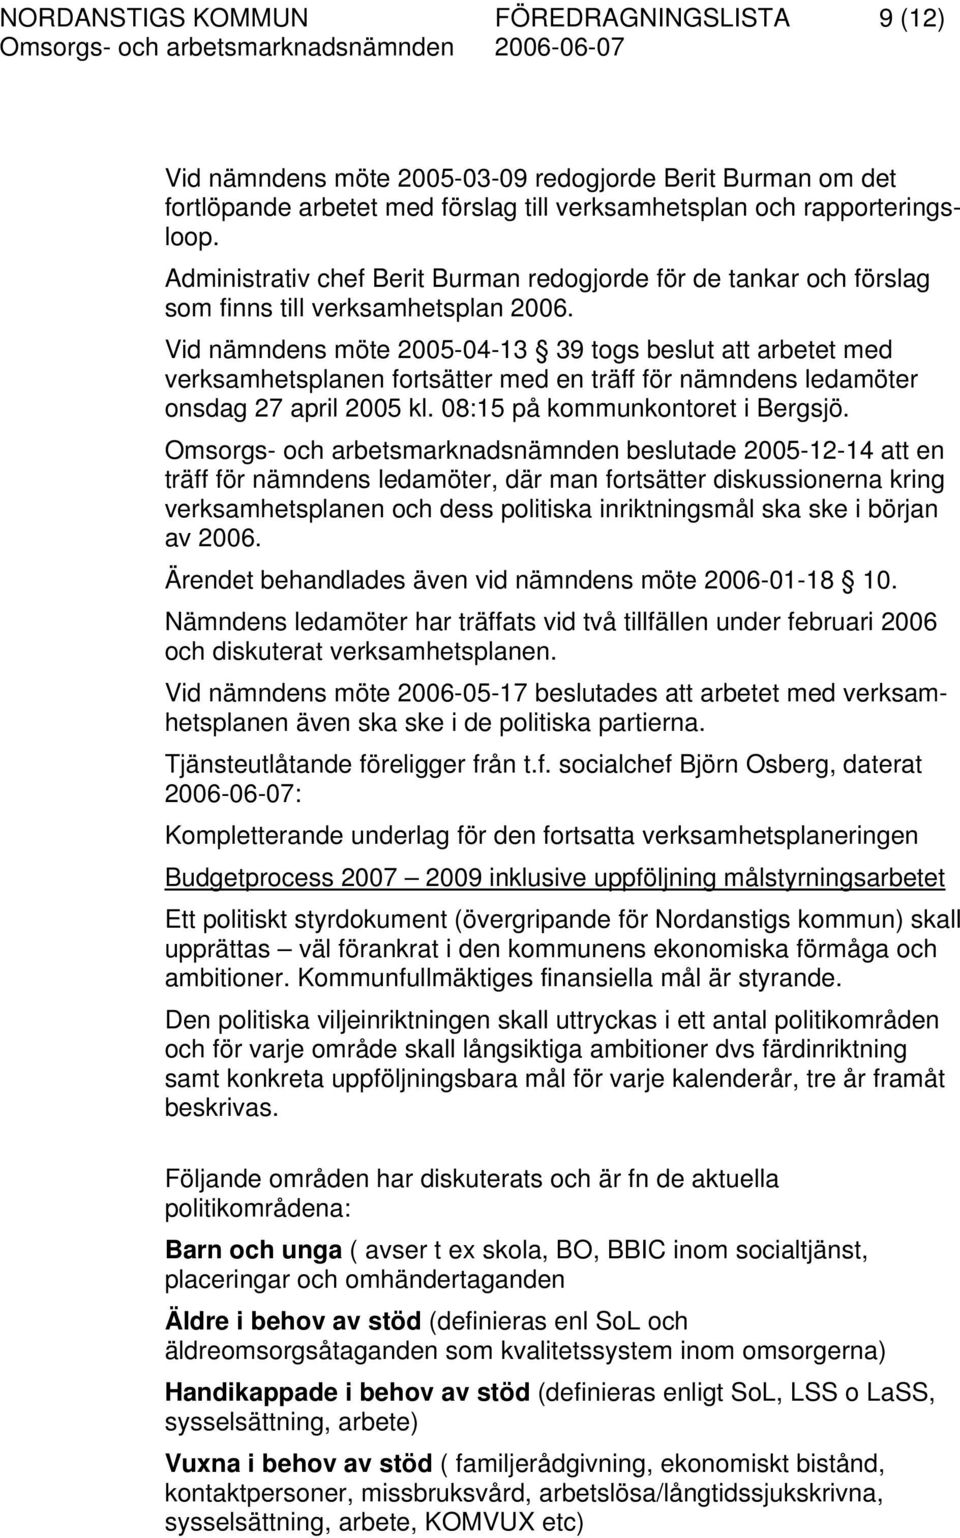 Vid nämndens möte 2005-04-13 39 togs beslut att arbetet med verksamhetsplanen fortsätter med en träff för nämndens ledamöter onsdag 27 april 2005 kl. 08:15 på kommunkontoret i Bergsjö.